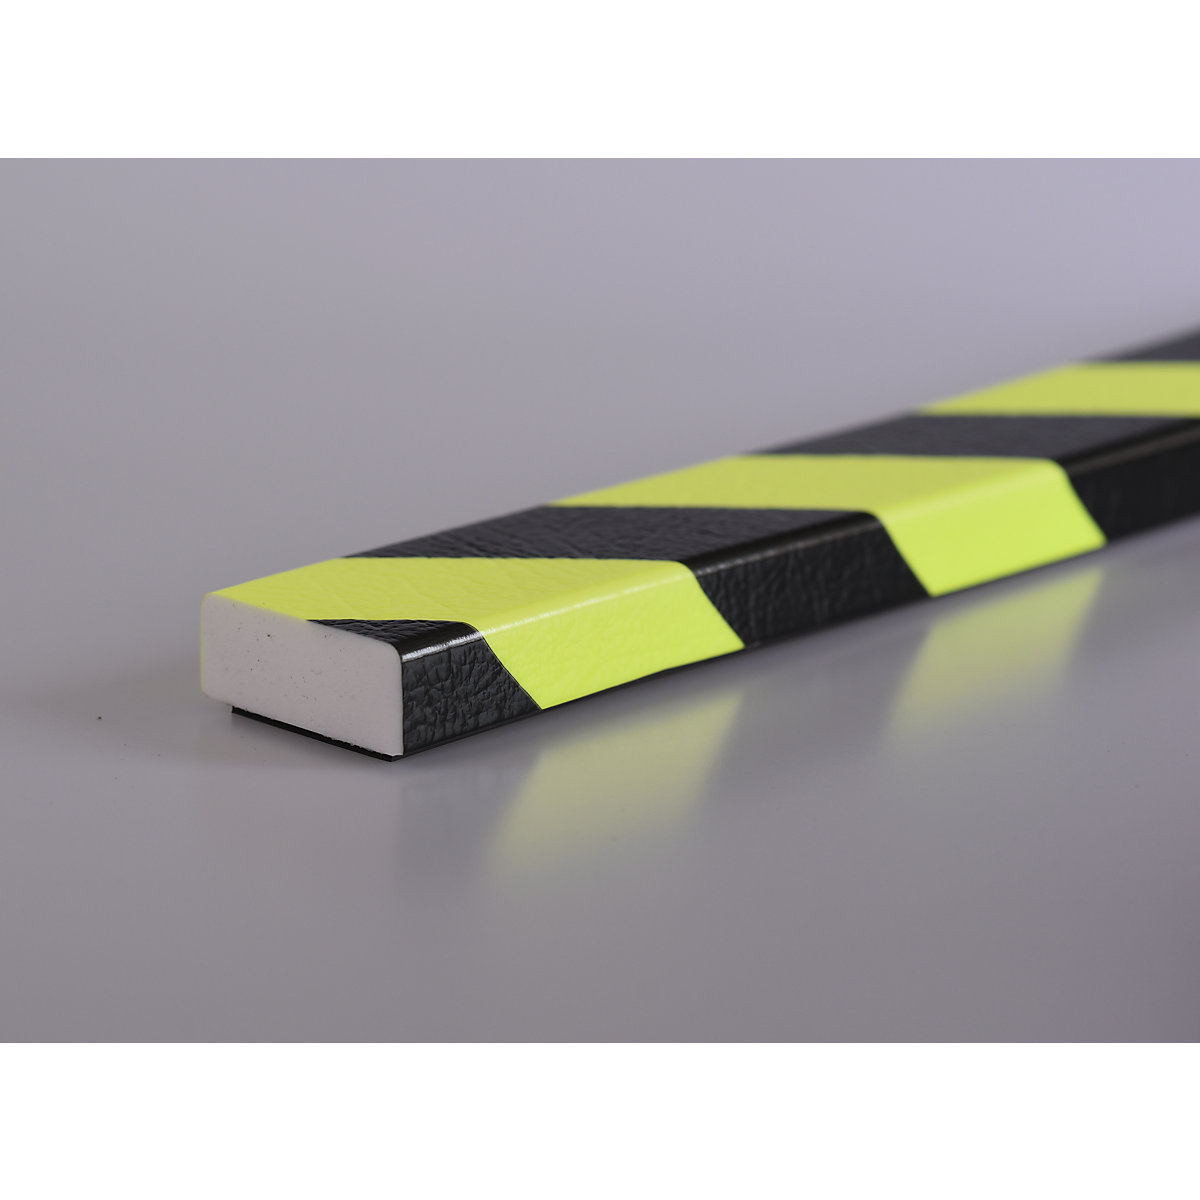 Protección de superficies Knuffi® – SHG, tipo D, pieza de 1 m, imán, amarillo y negro, fluorescente de día-26